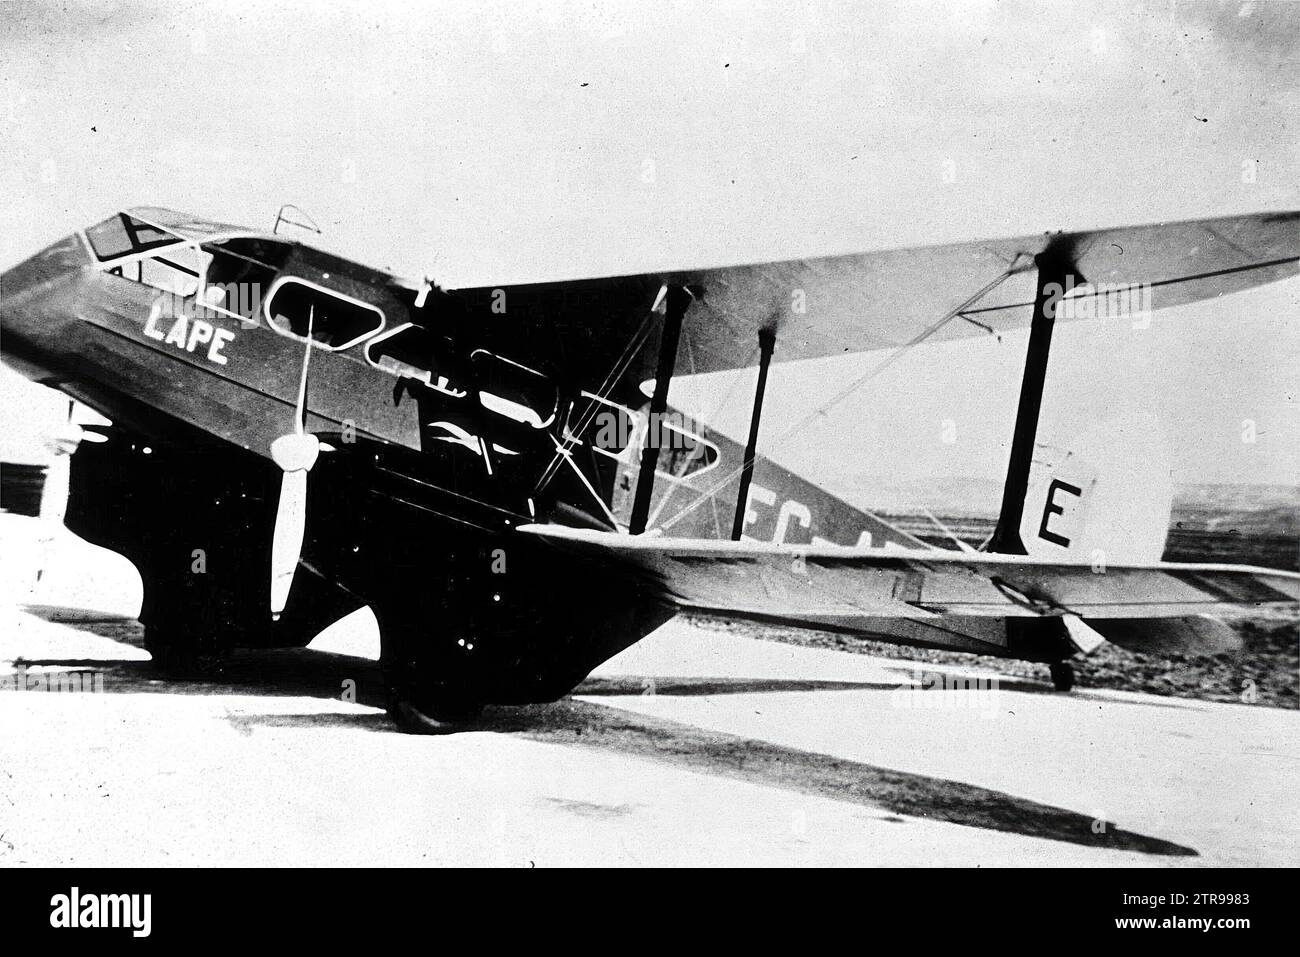 1930 (ca.). Dragon rapide, uno dei più popolari aerei di linea a corto raggio degli anni '1930, fu uno dei primi aerei dell'Iberia. Crediti: Album / Archivo ABC Foto Stock